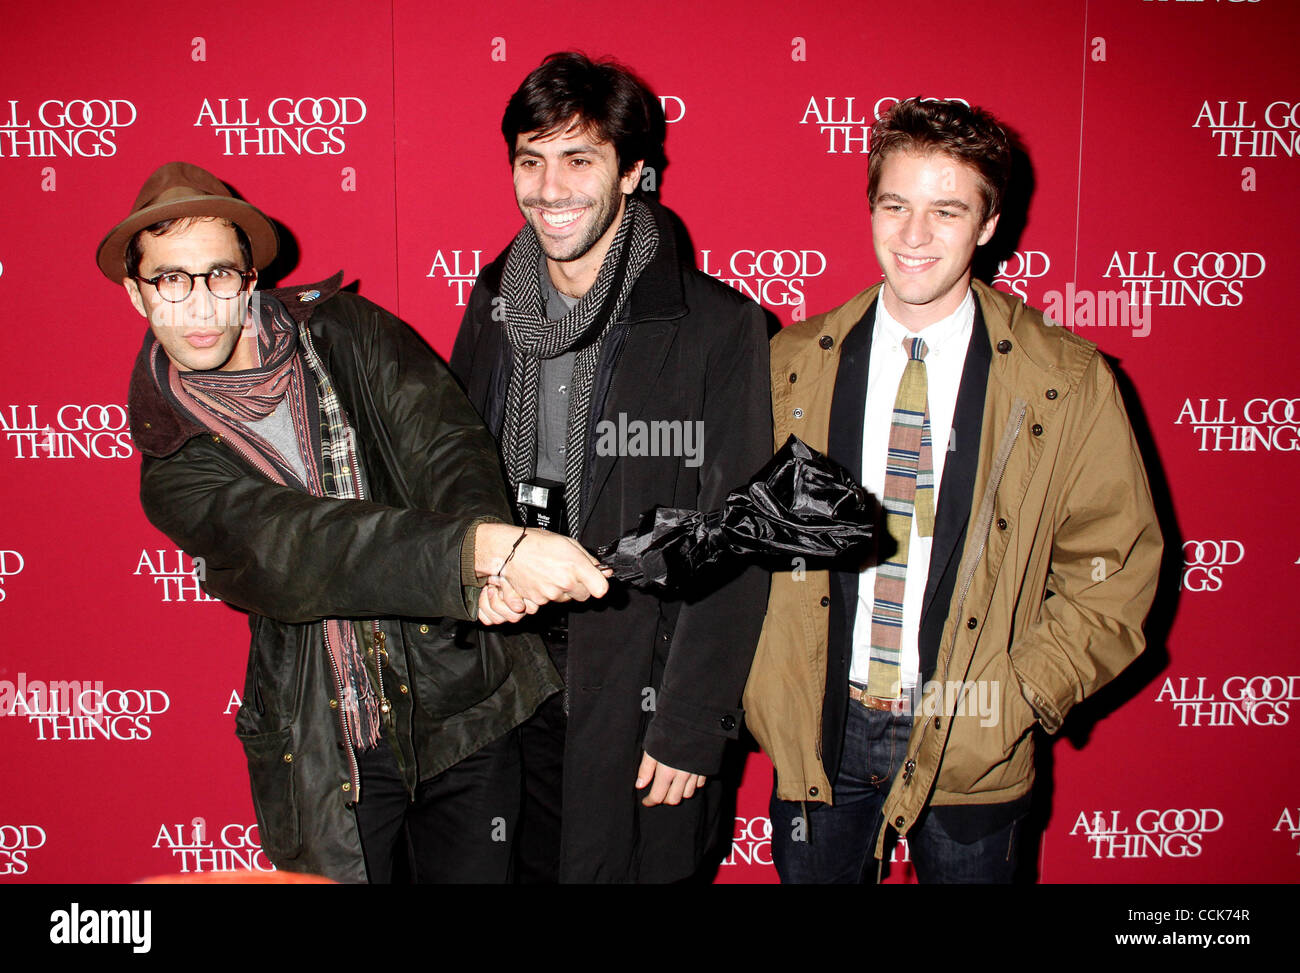 Diciembre 1, 2010 - Nueva York, Nueva York, EE.UU. - ARIEL SCHULMAN, NEV  SCHULMAN, y Henry Joost de la película "El Bagre" asistir al estreno Nueva  York de "todas las cosas buenas",